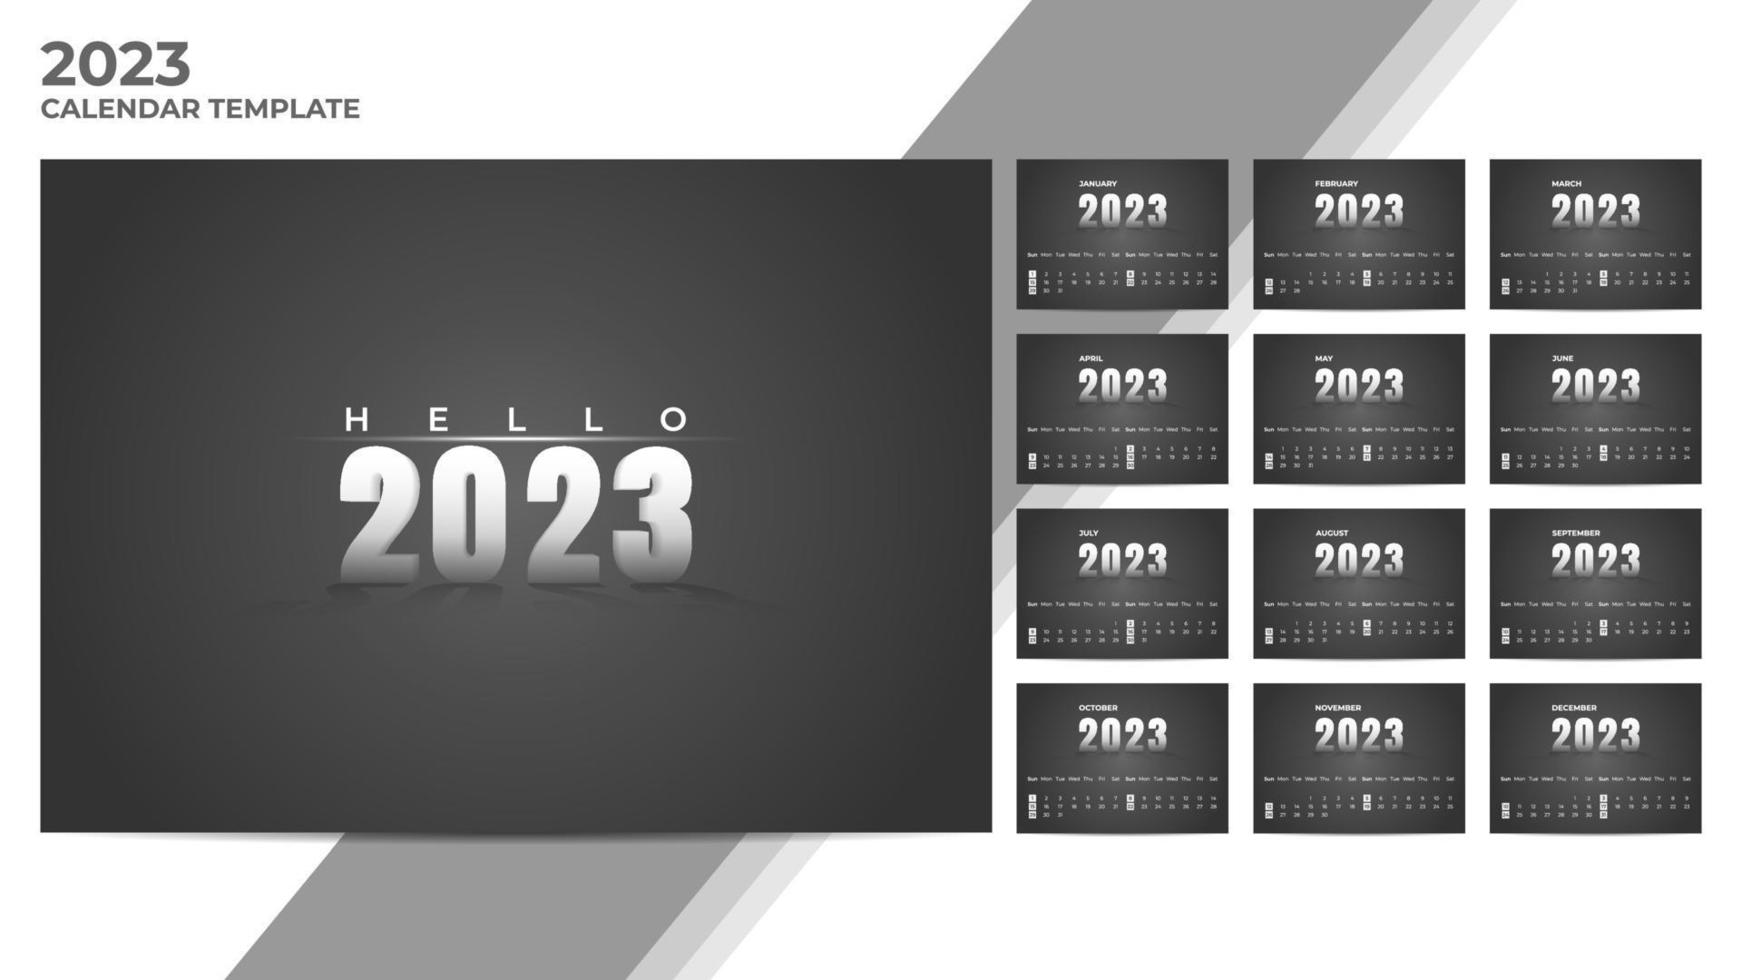 Minimal dark theme 2023 calendar template vector